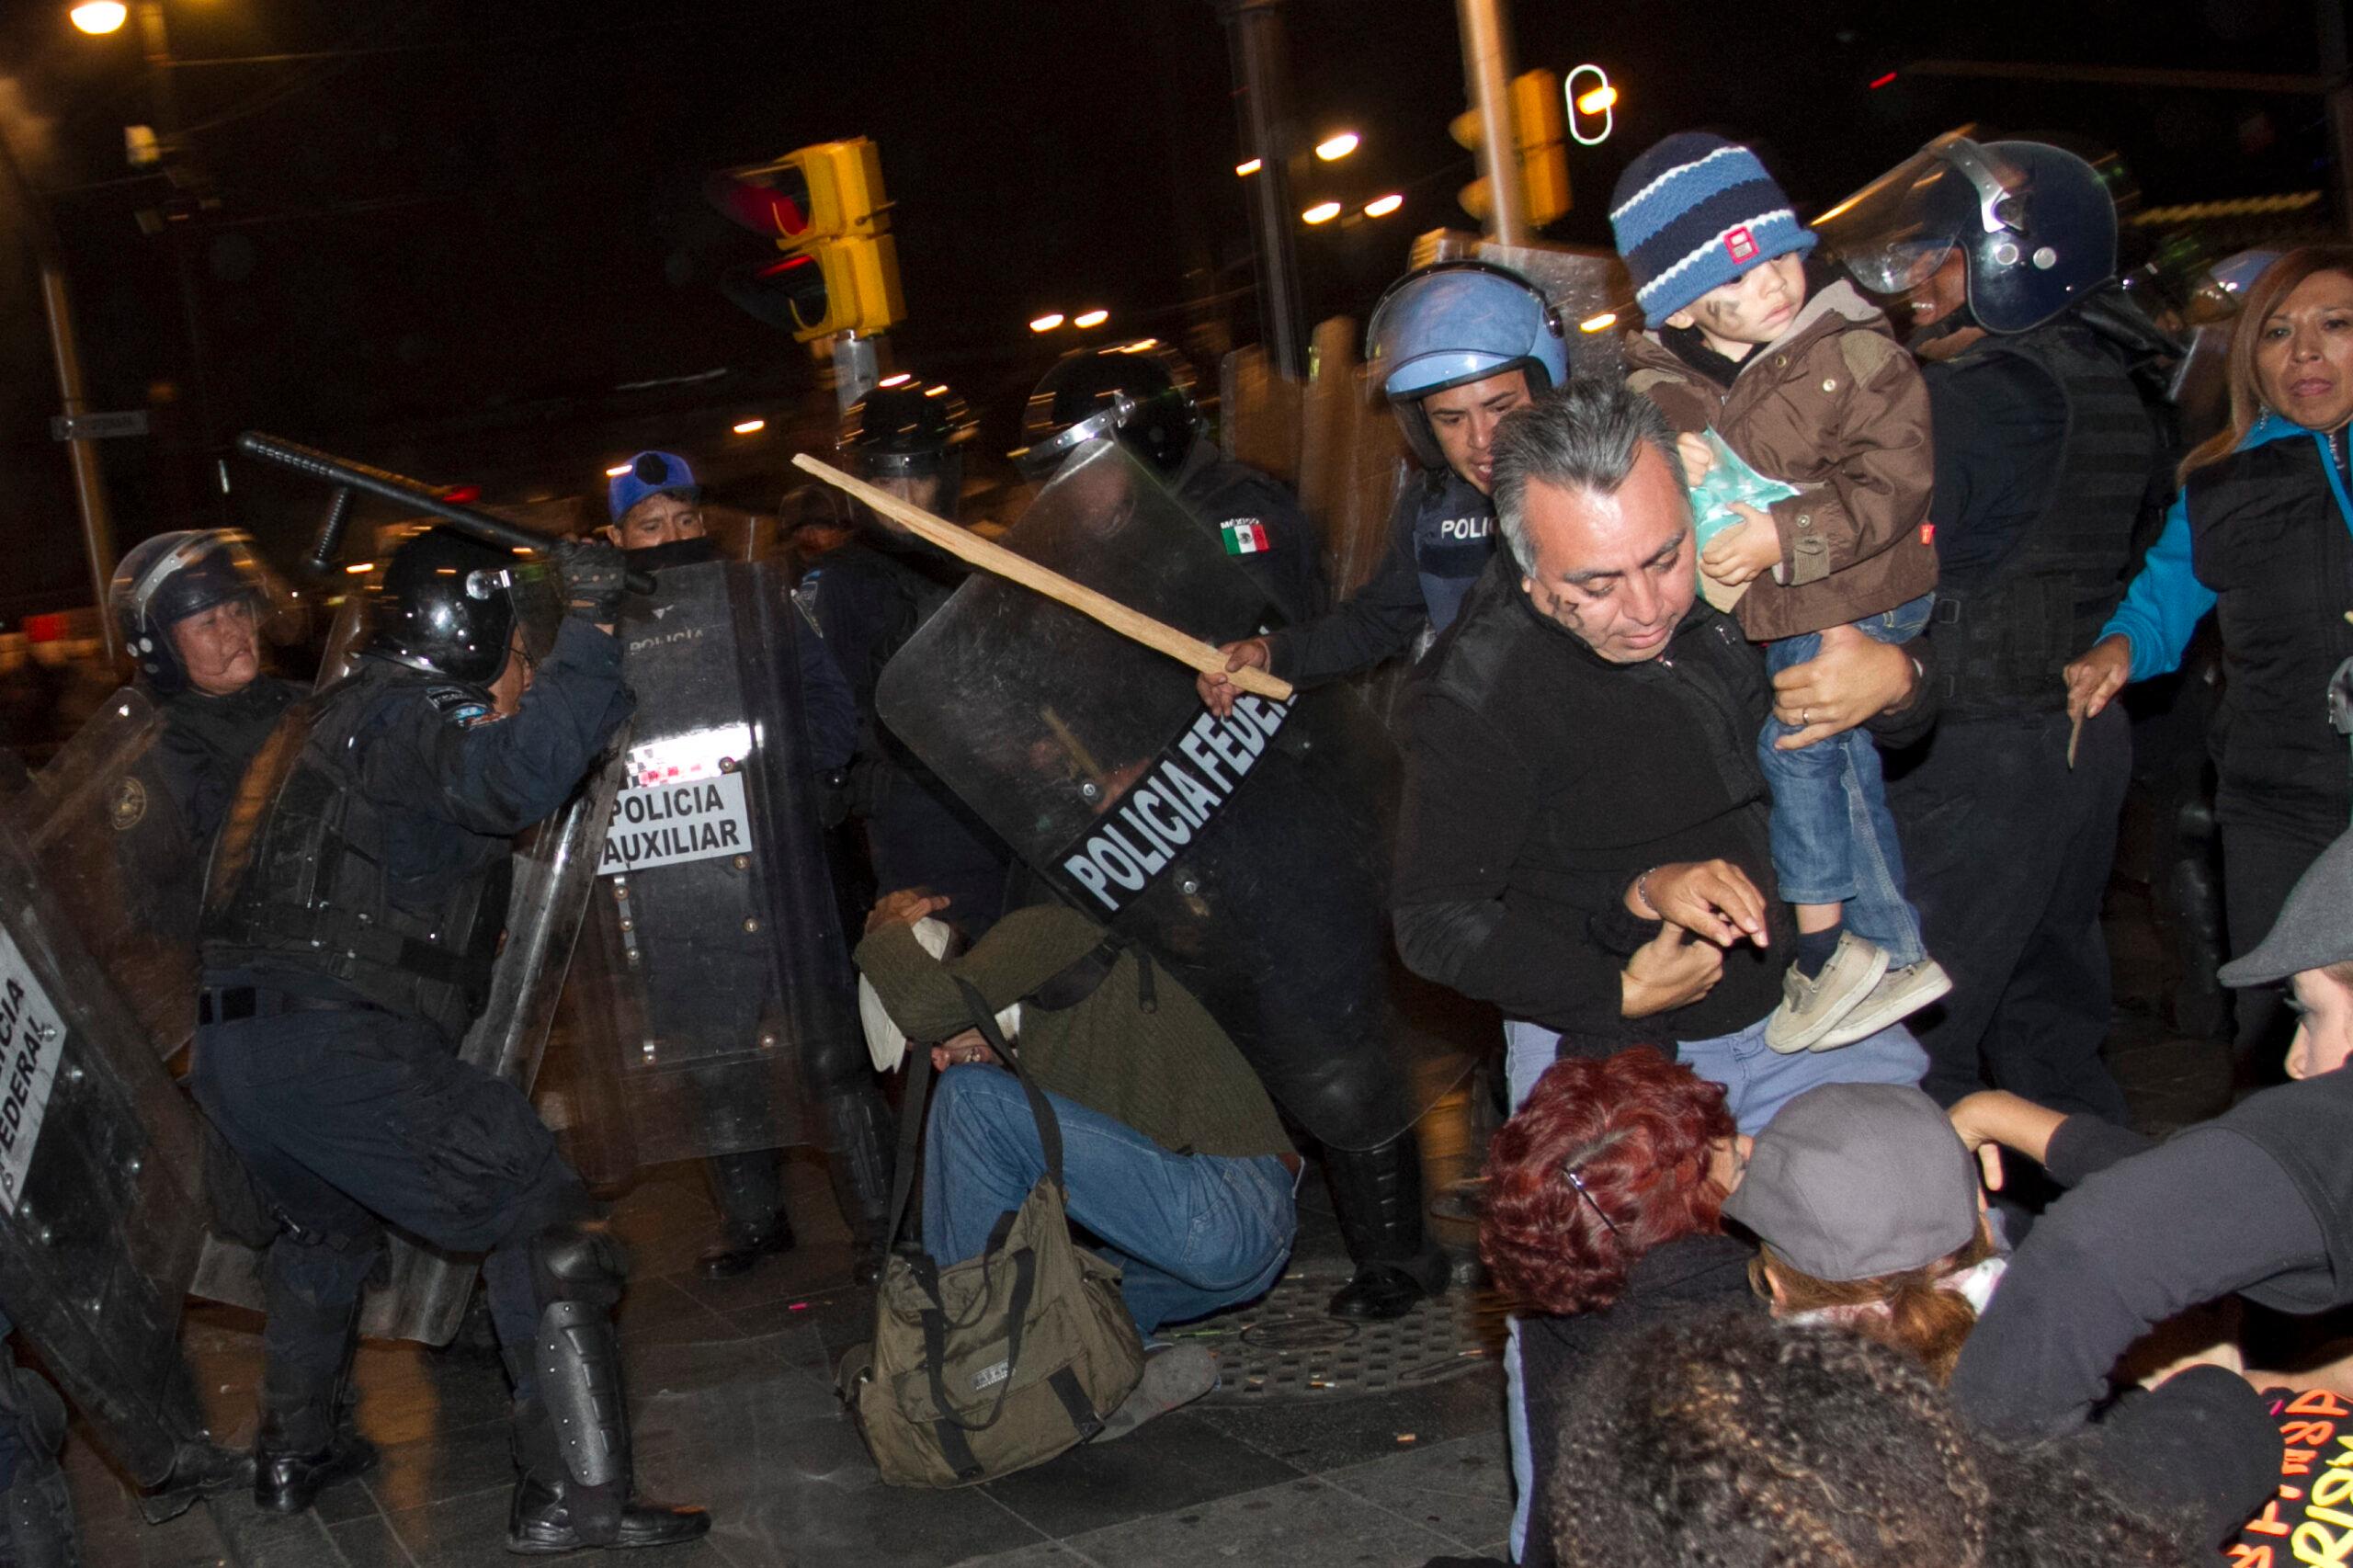 #20NovMX: No era manifestante, pero la policía lo detuvo, torturó y abandonó inconsciente en la calle